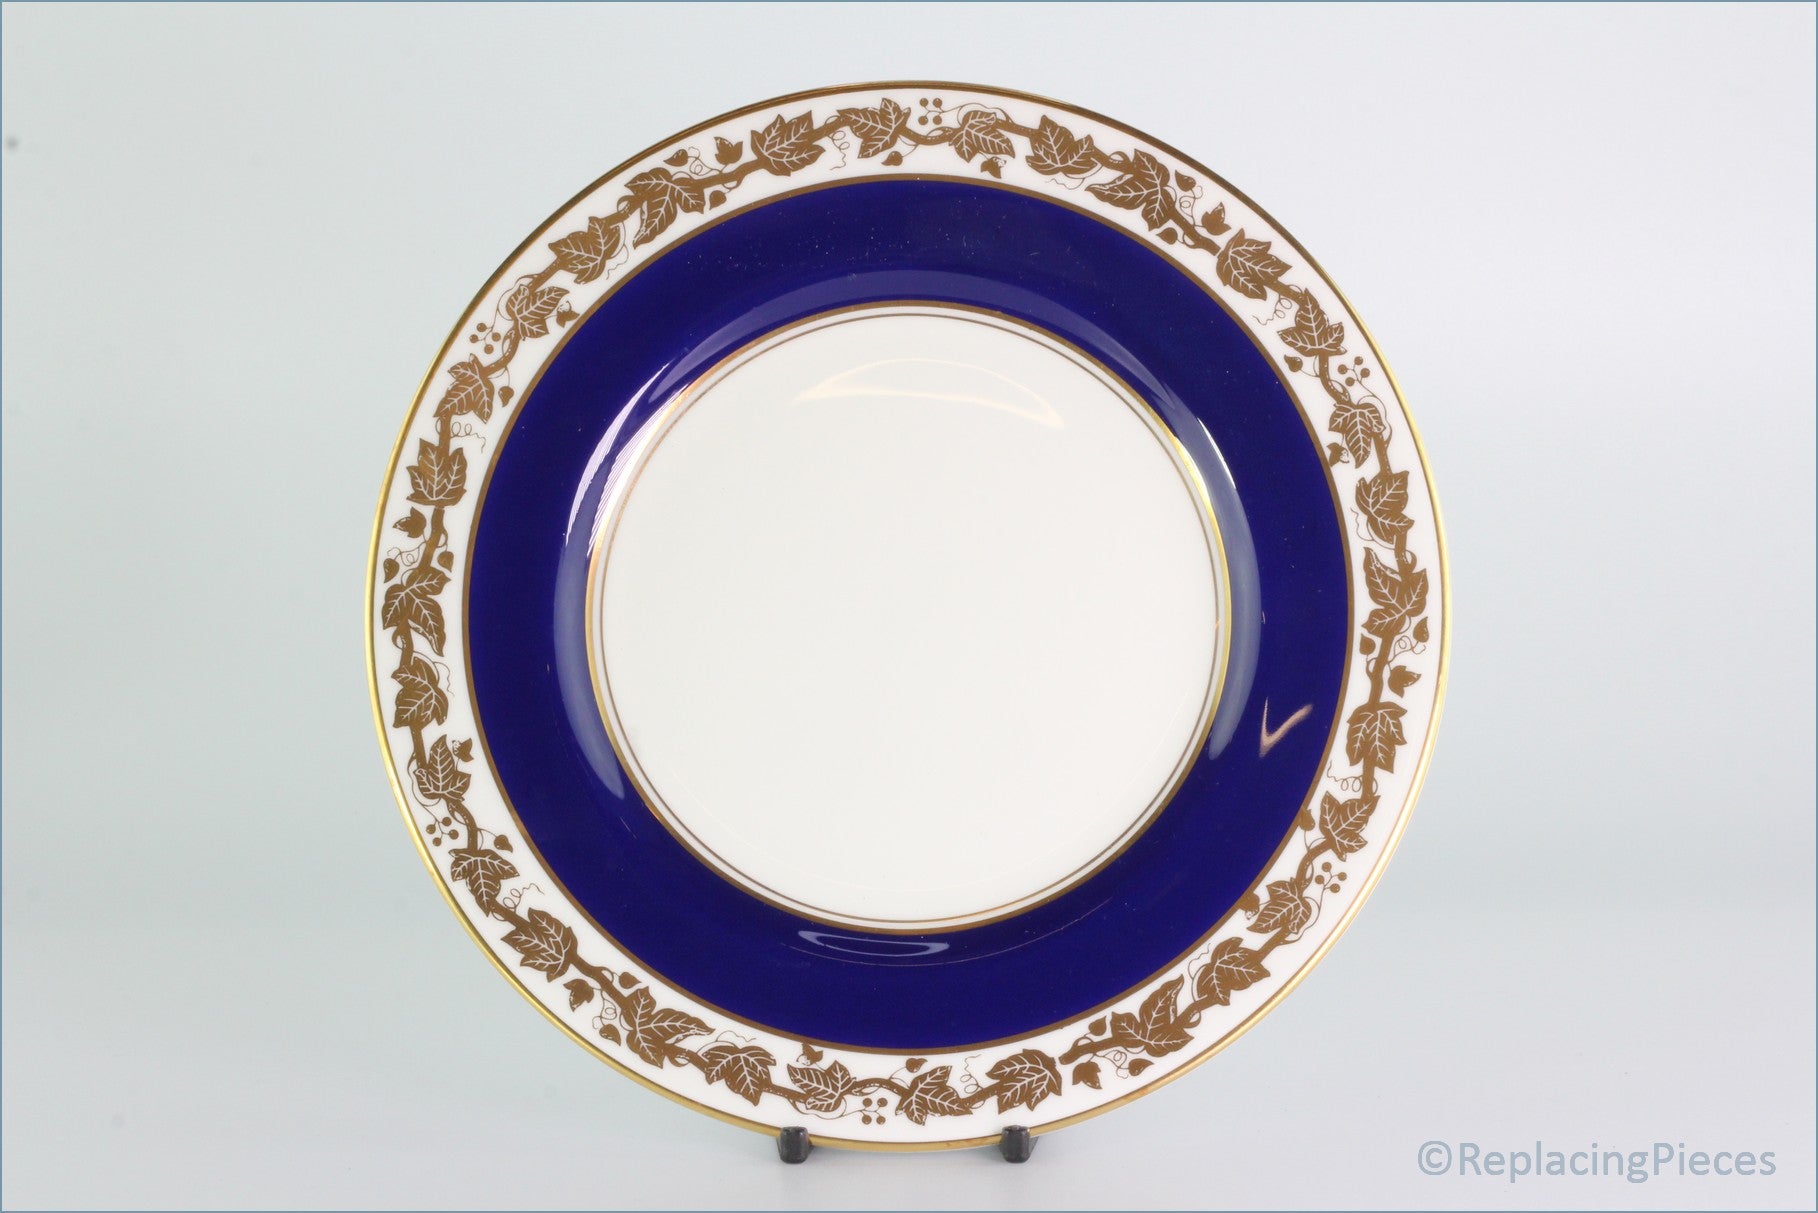 Wedgwood - Whitehall (Cobalt Blue) - 8" Salad Plate